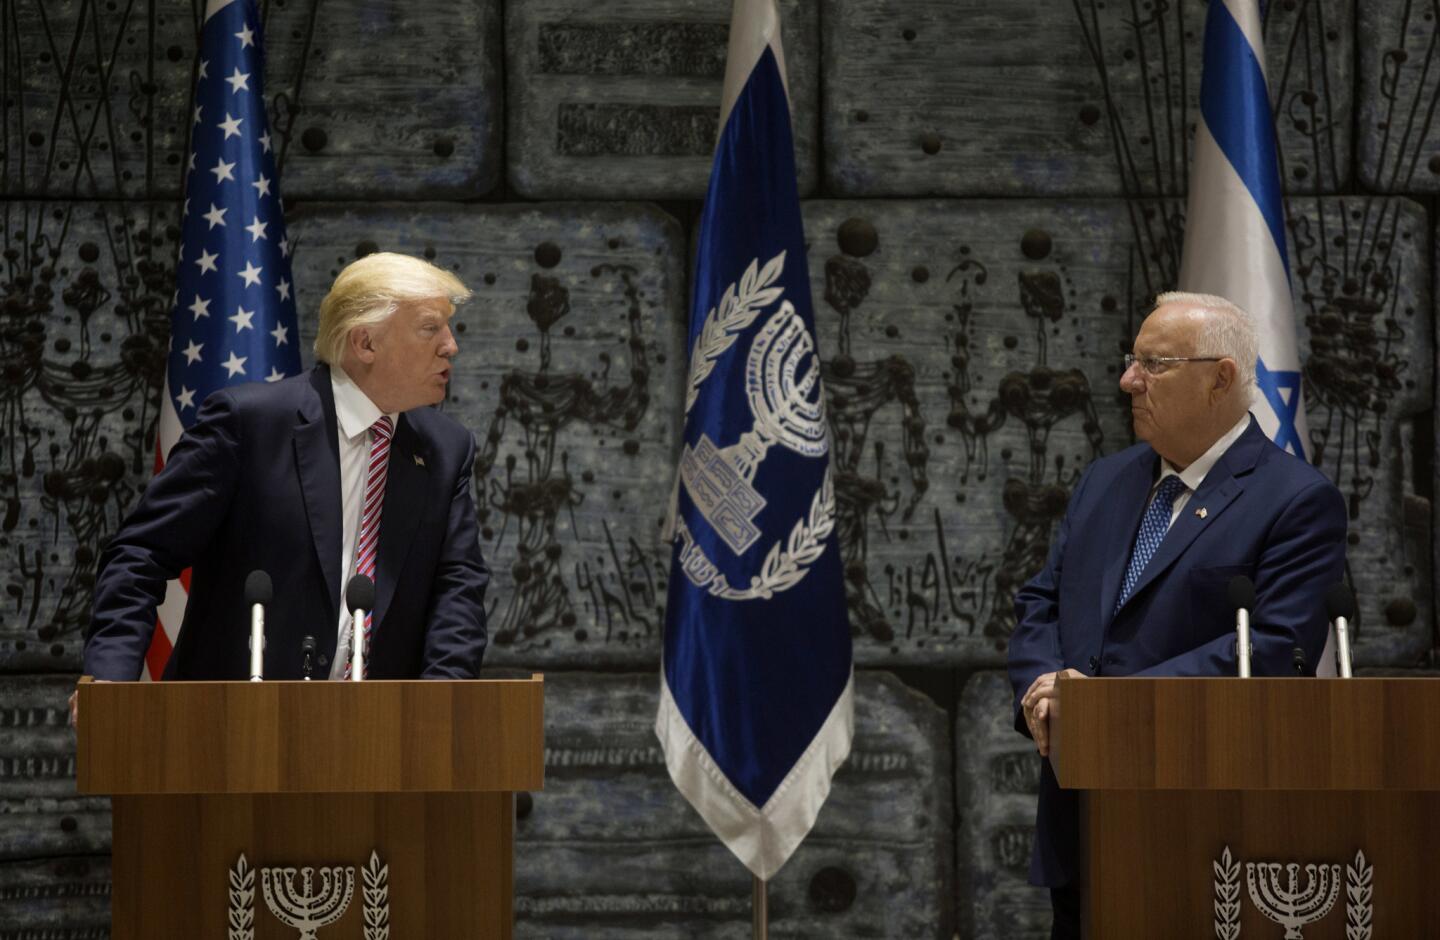 President Trump in Israel